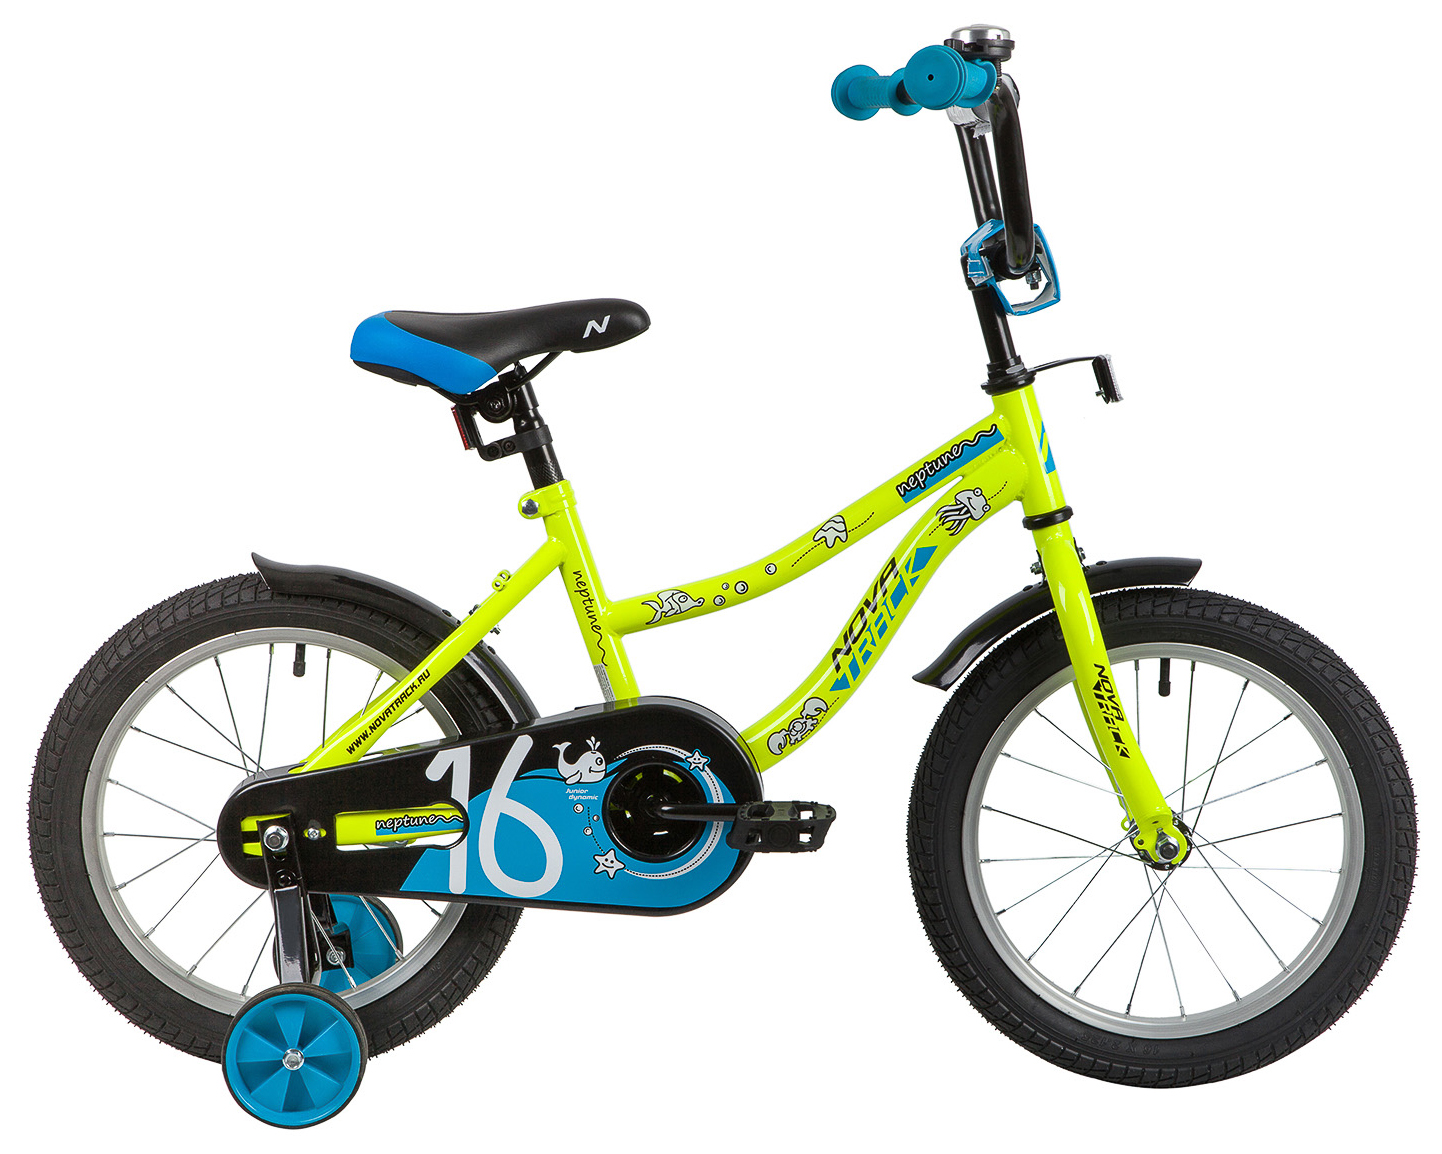  Отзывы о Детском велосипеде Novatrack Neptune 12 2020